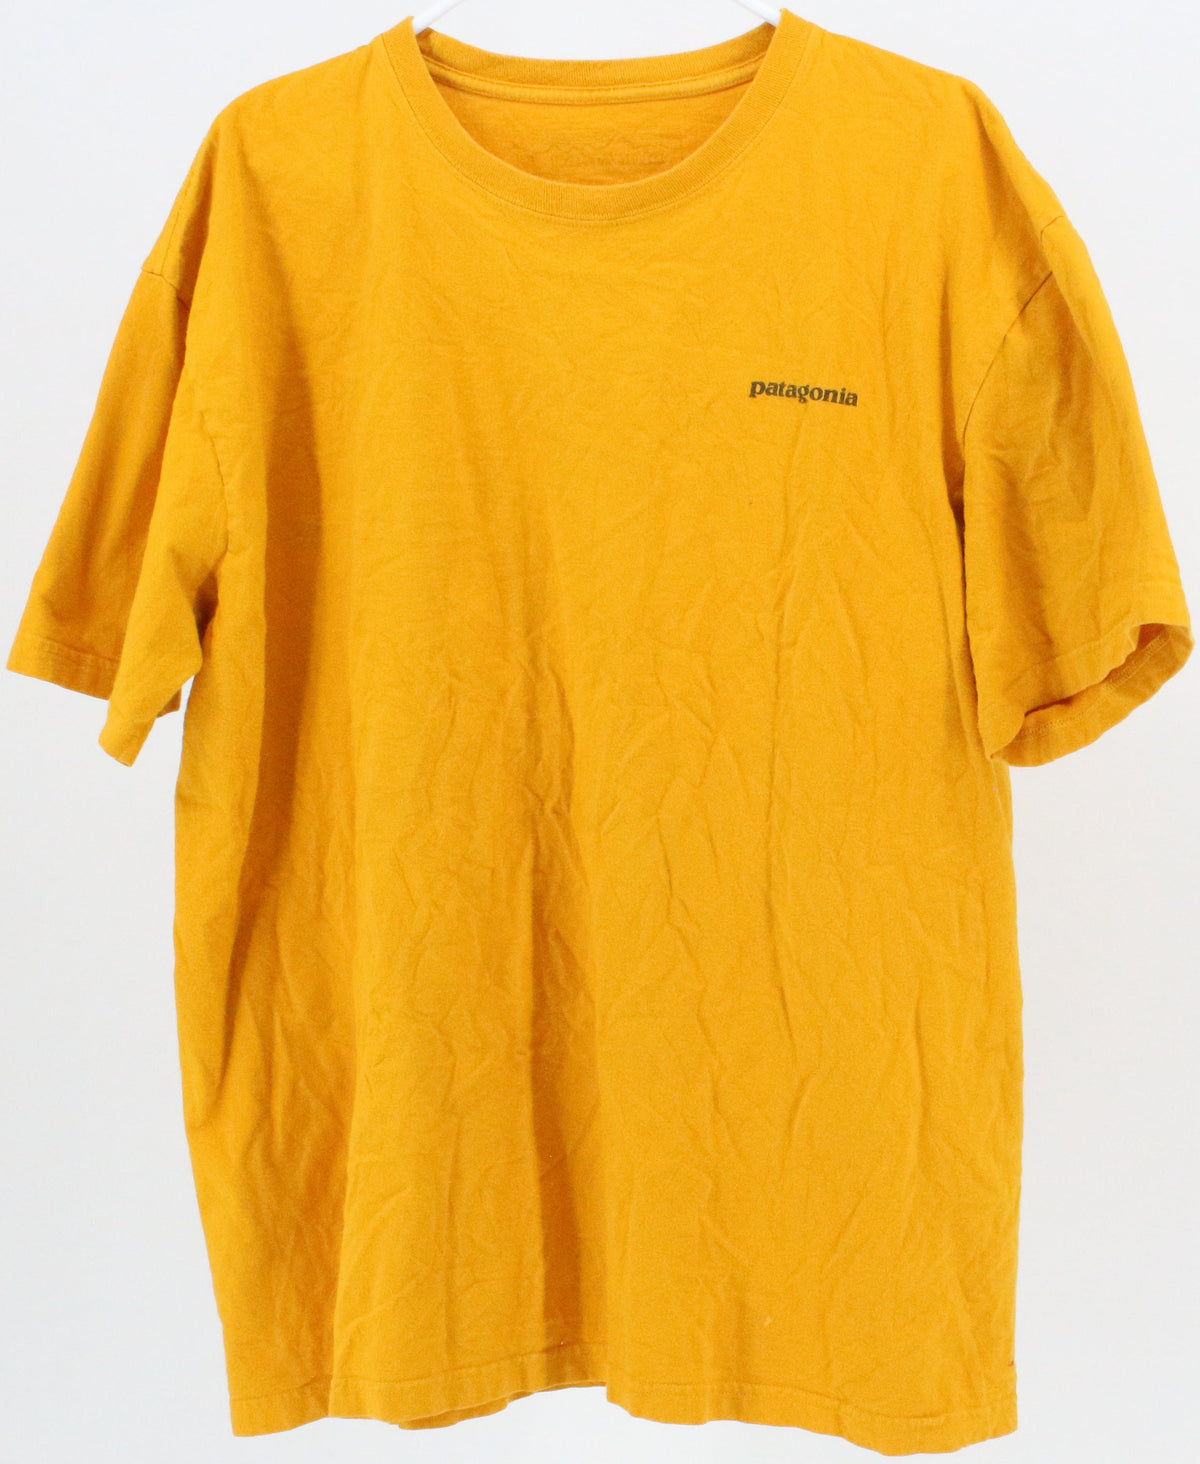 Patagonia Yellow T-Shirt